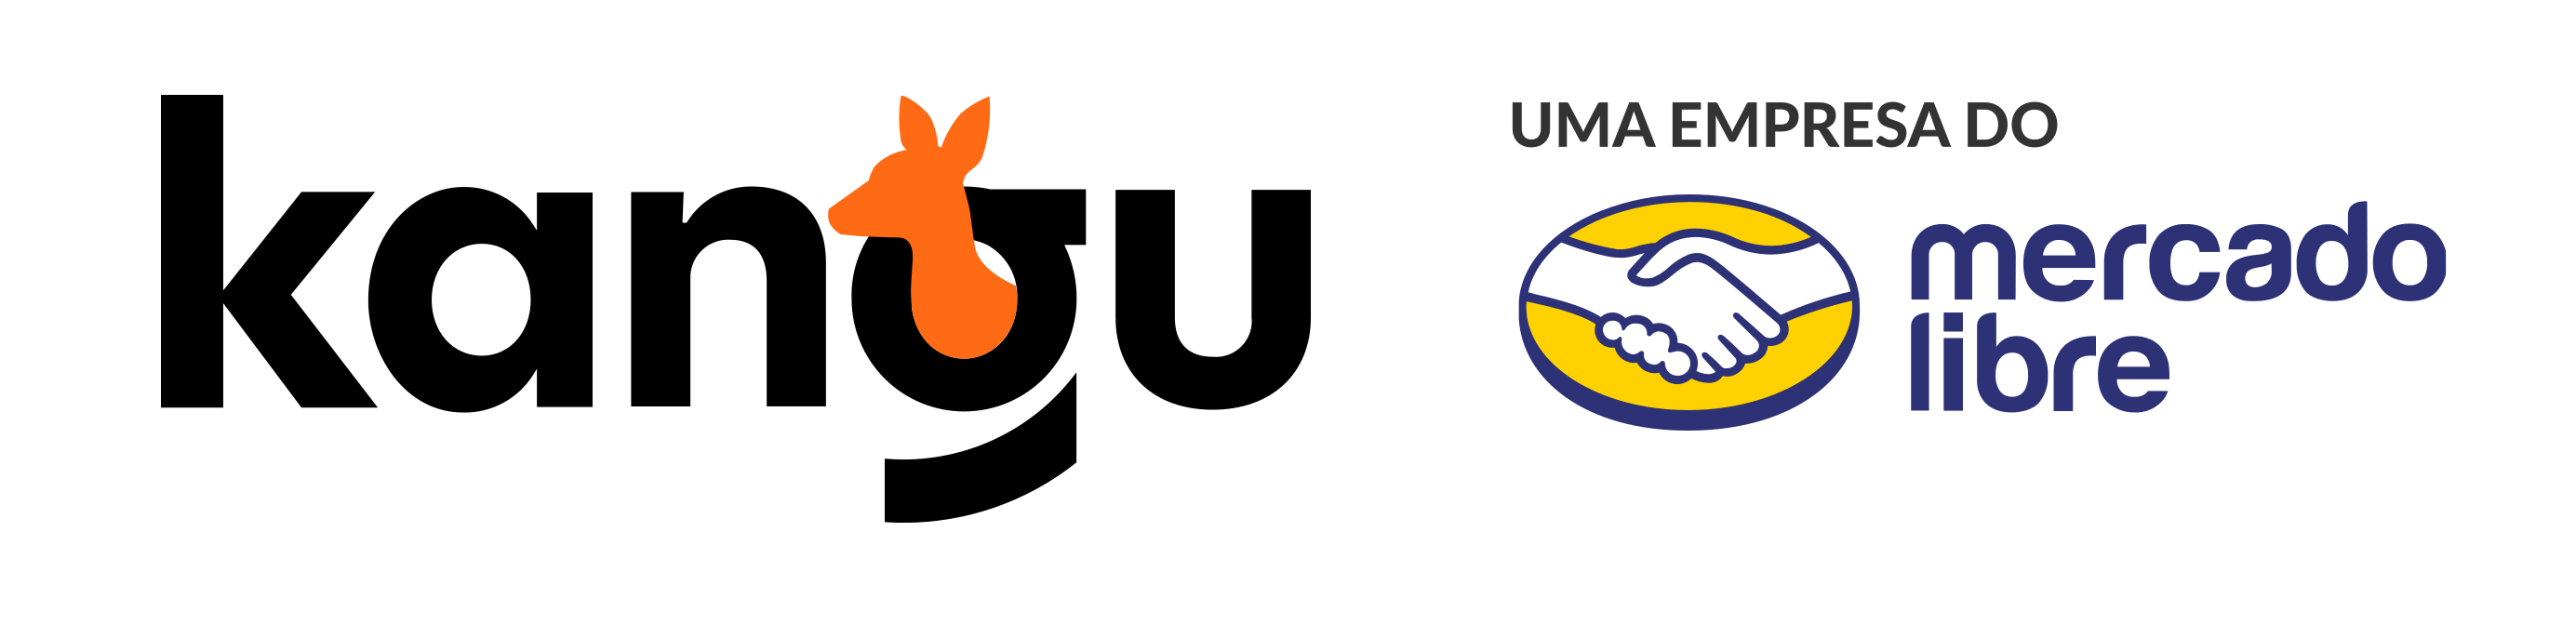 logotipo kangu